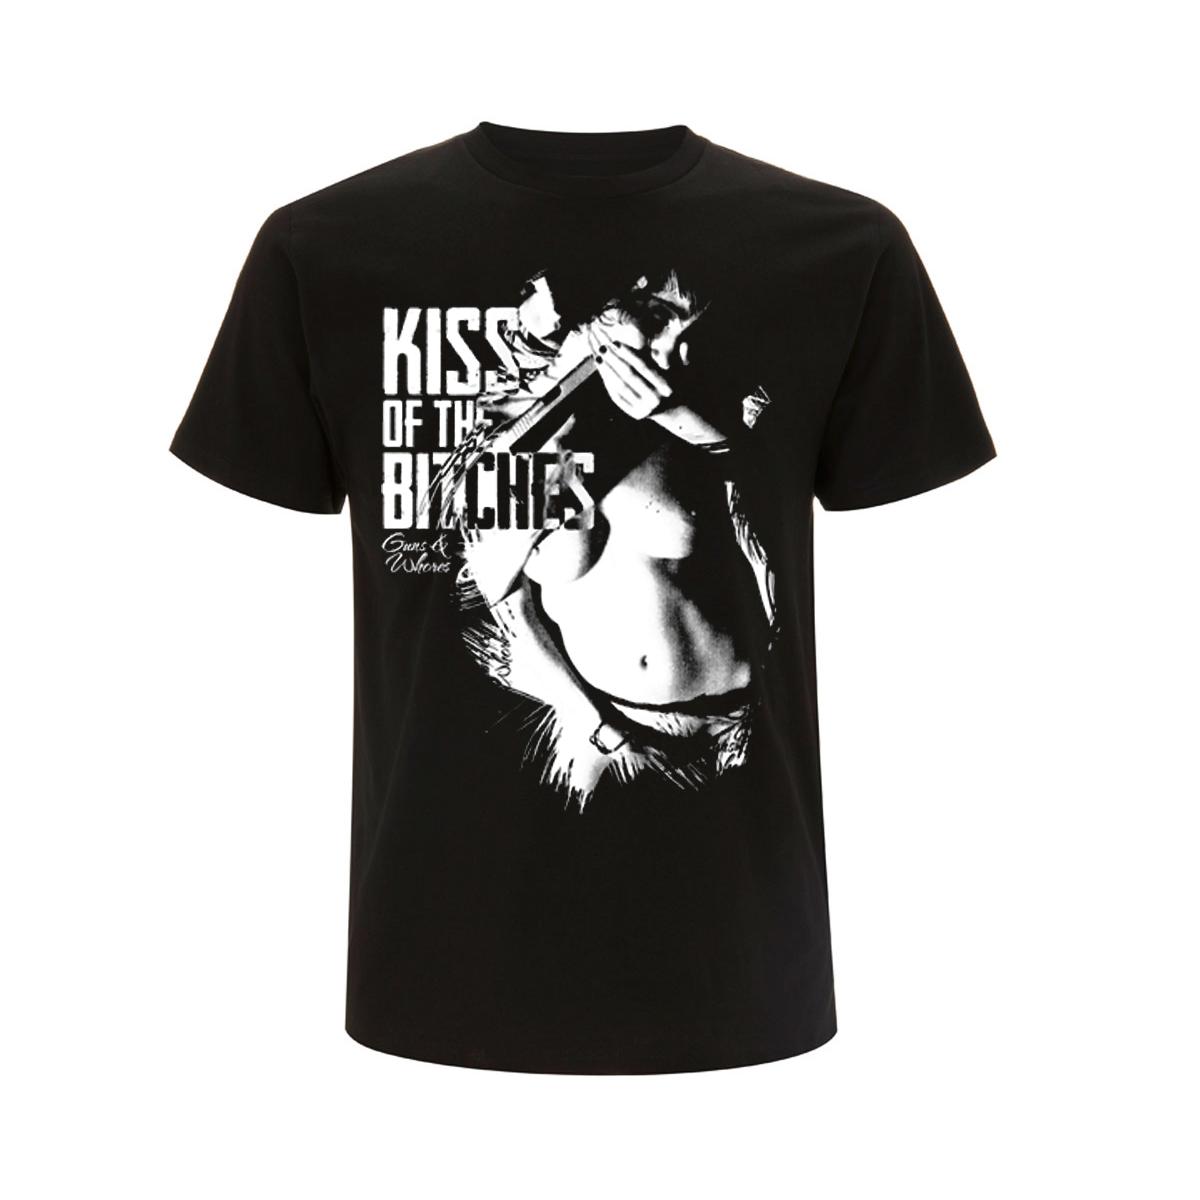 Kiss of the Bitches - Männer T-Shirt - schwarz